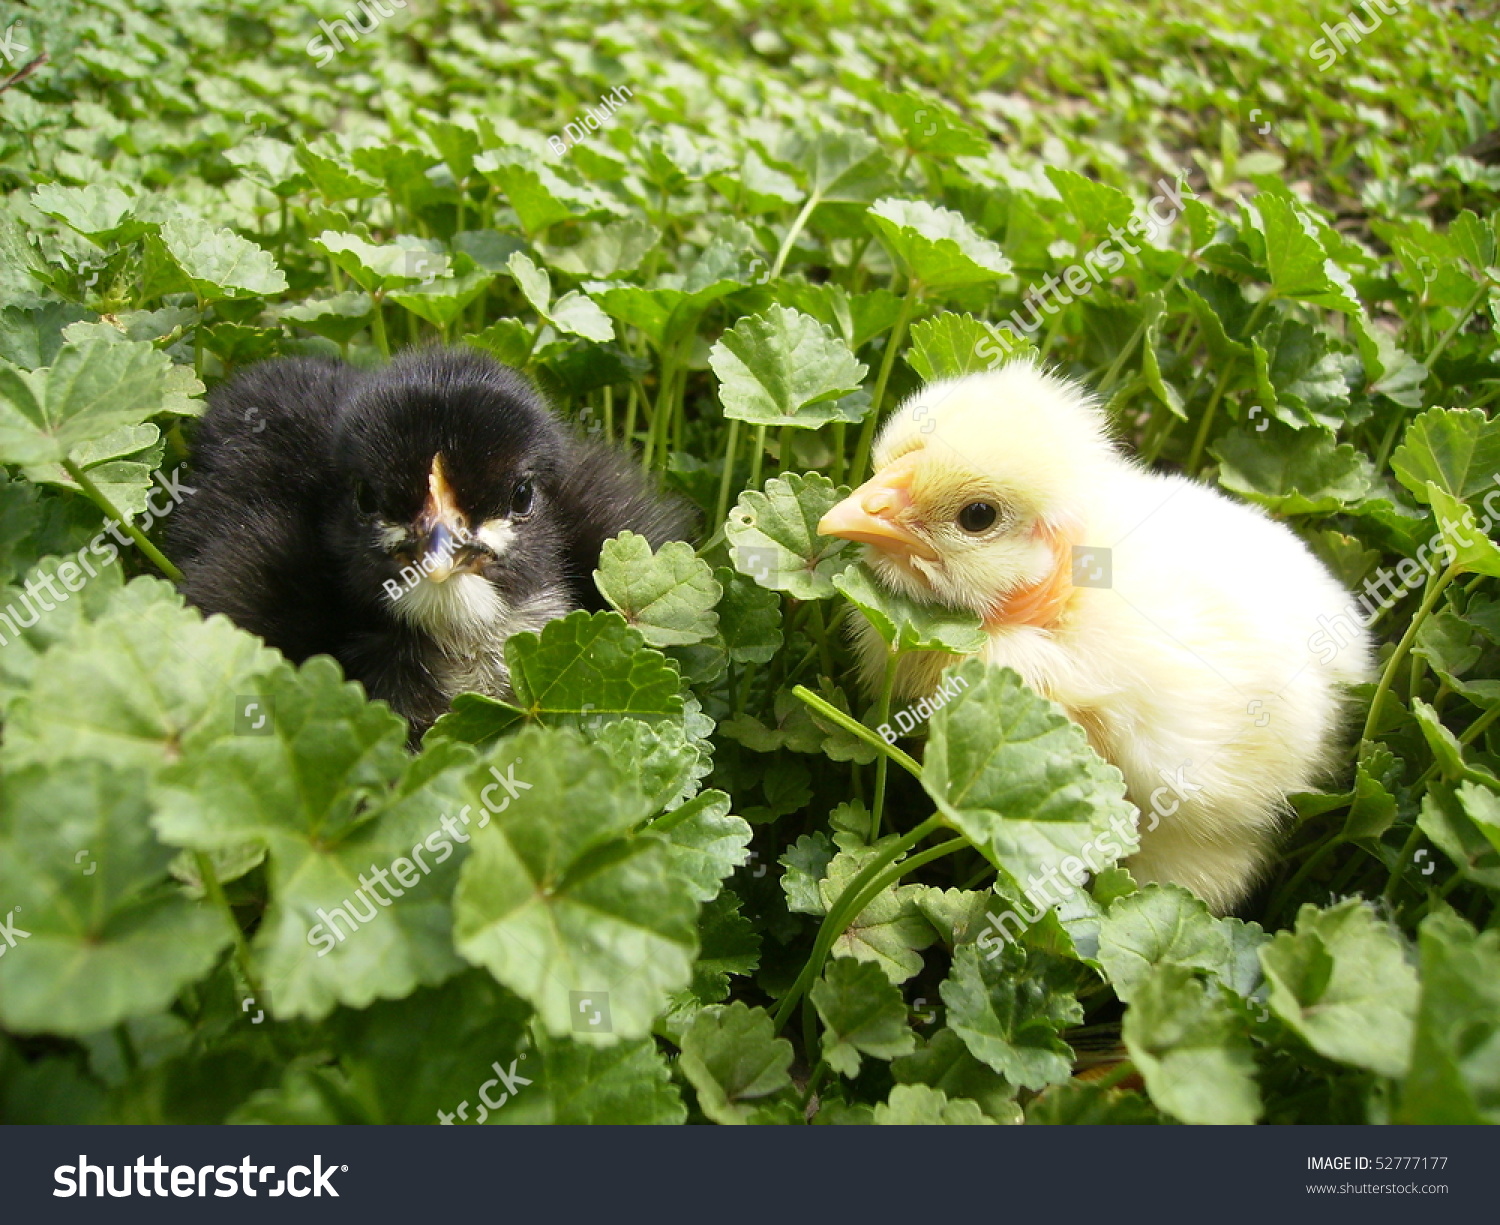 Black And Yellow Chicken Stock Photo 52777177 : Shutterstock